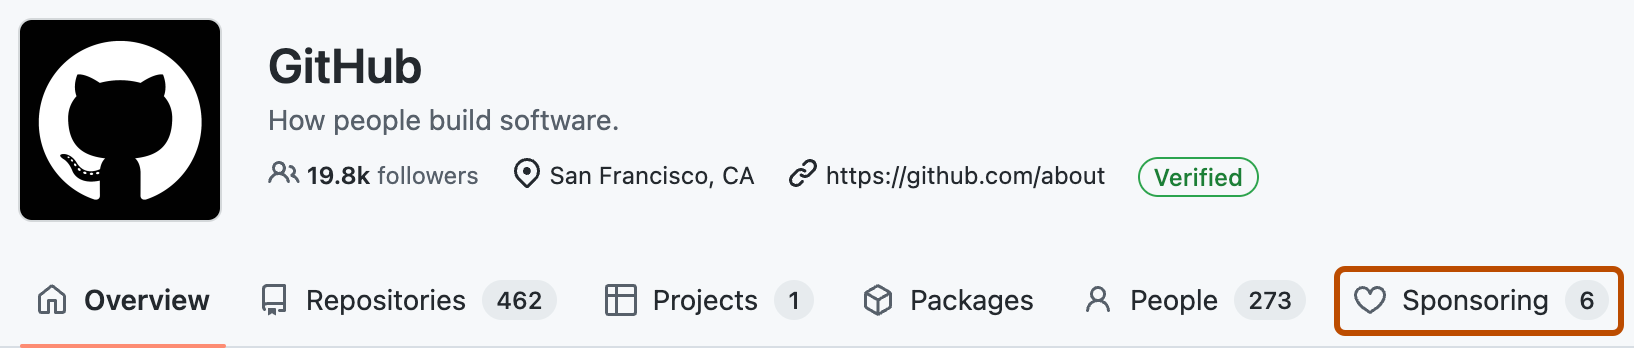 "GitHub" 조직의 홈페이지 스크린샷 "스폰서"라는 레이블이 지정된 메뉴 탭은 진한 주황색으로 표시됩니다.